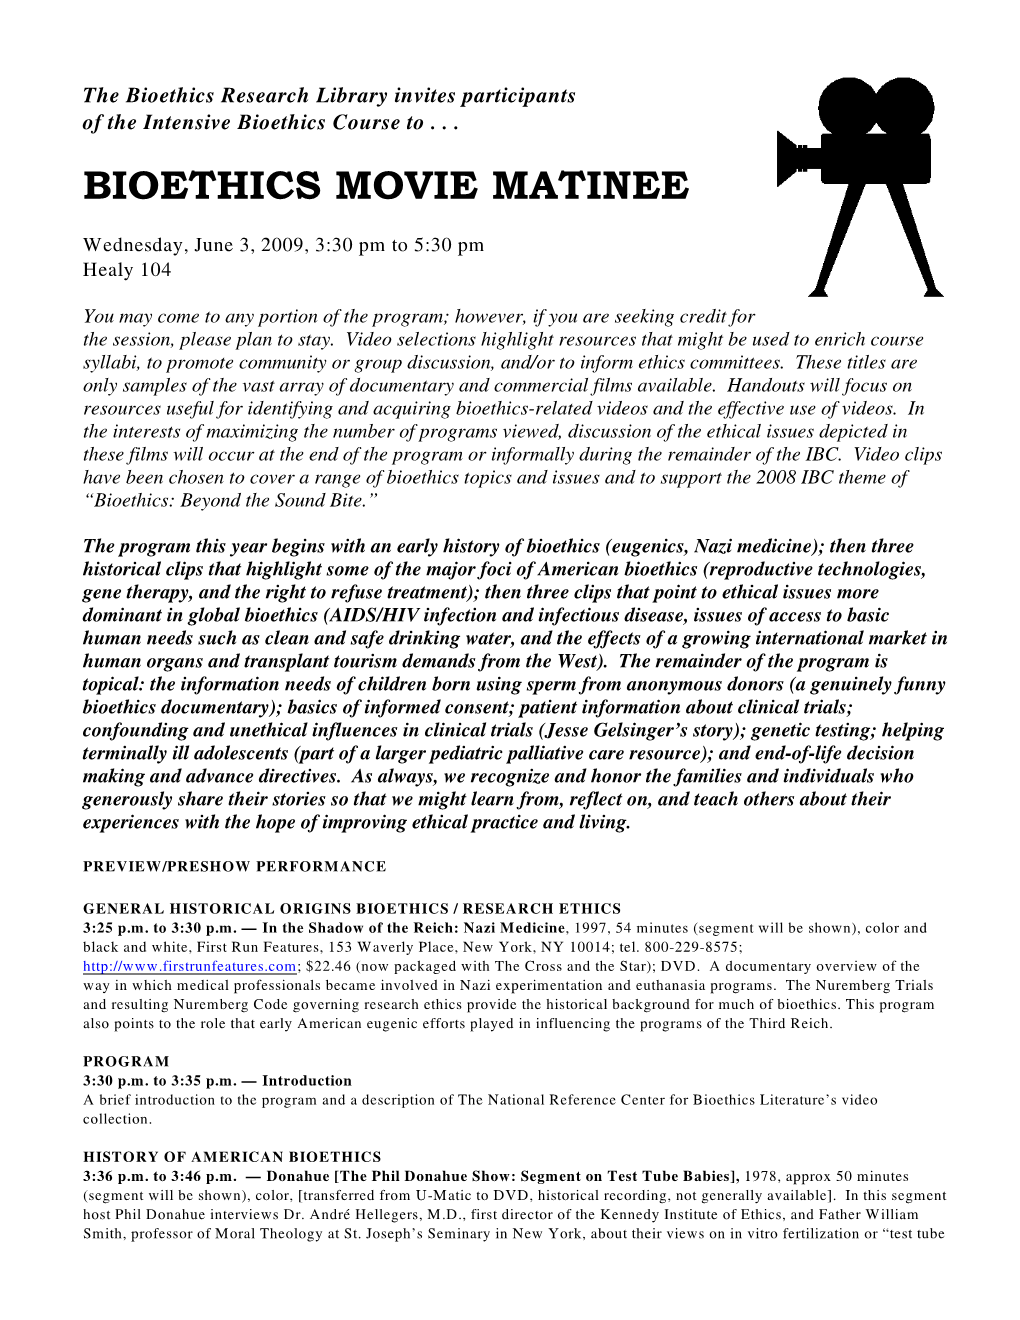 Bioethics Movie Matinee